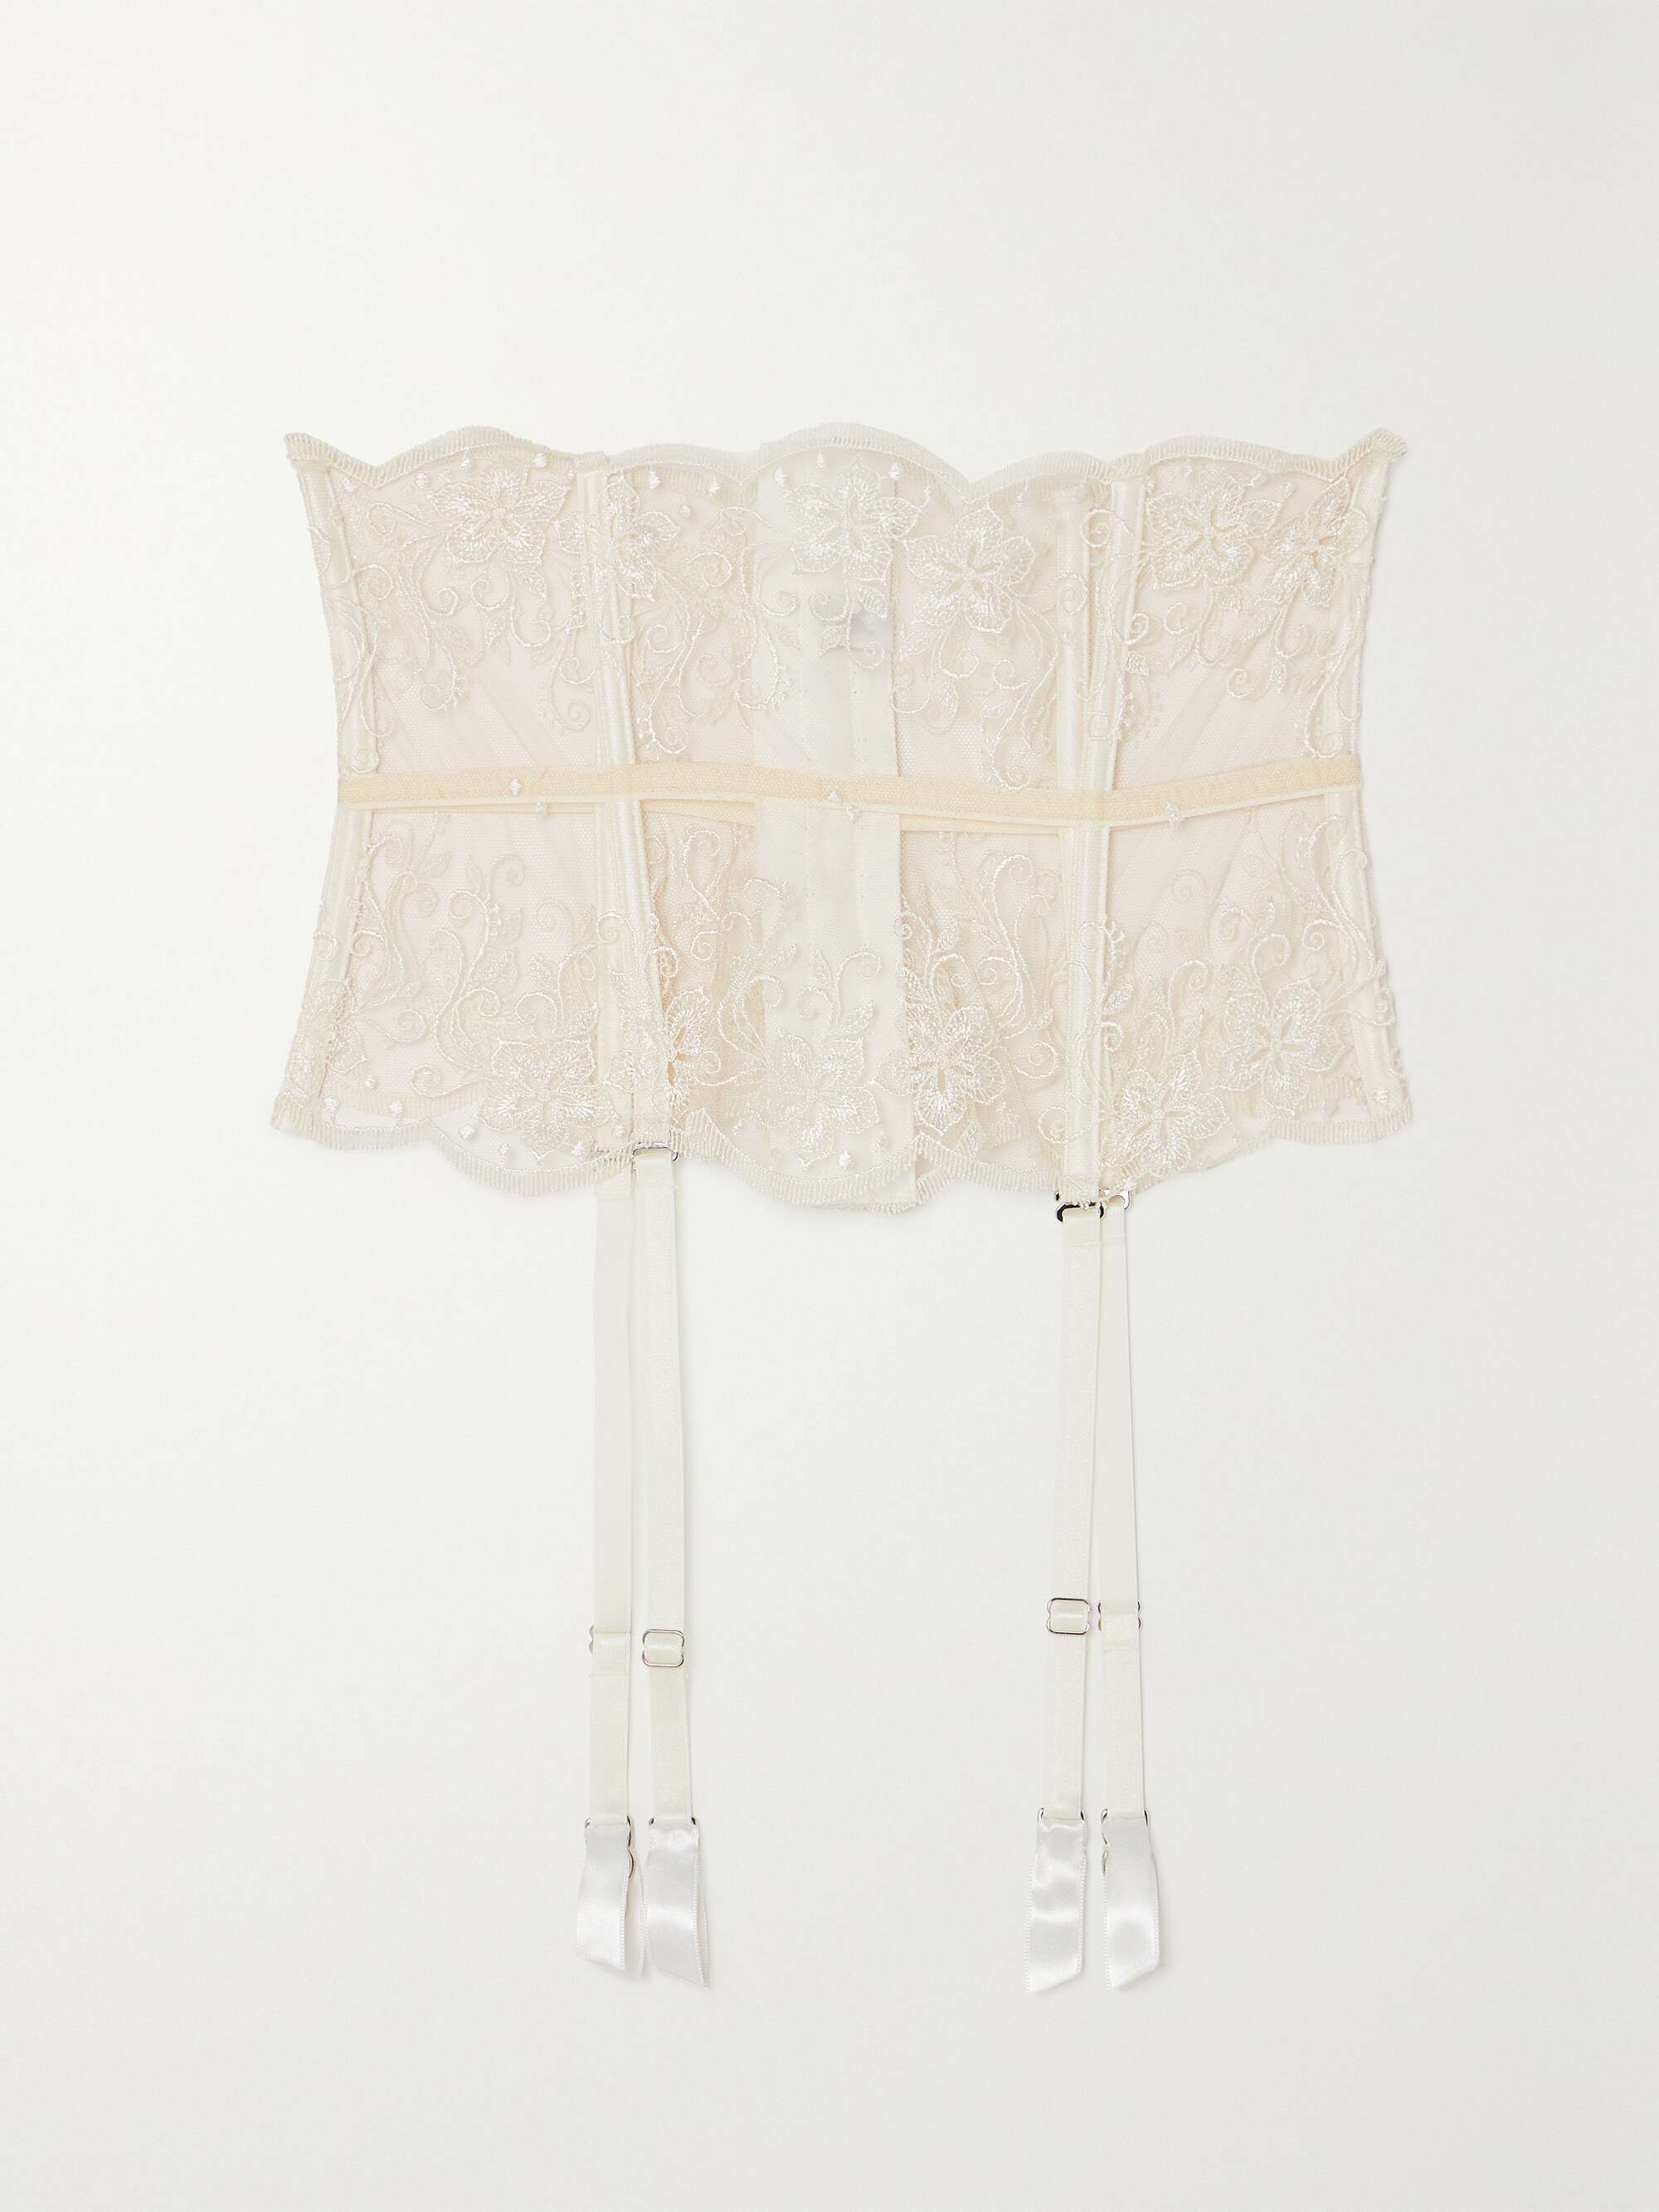 I.D. Sarrieri + + Net Sustain Tubereuse Blanche Satin-Trimmed Embroidered Tulle Suspender Belt